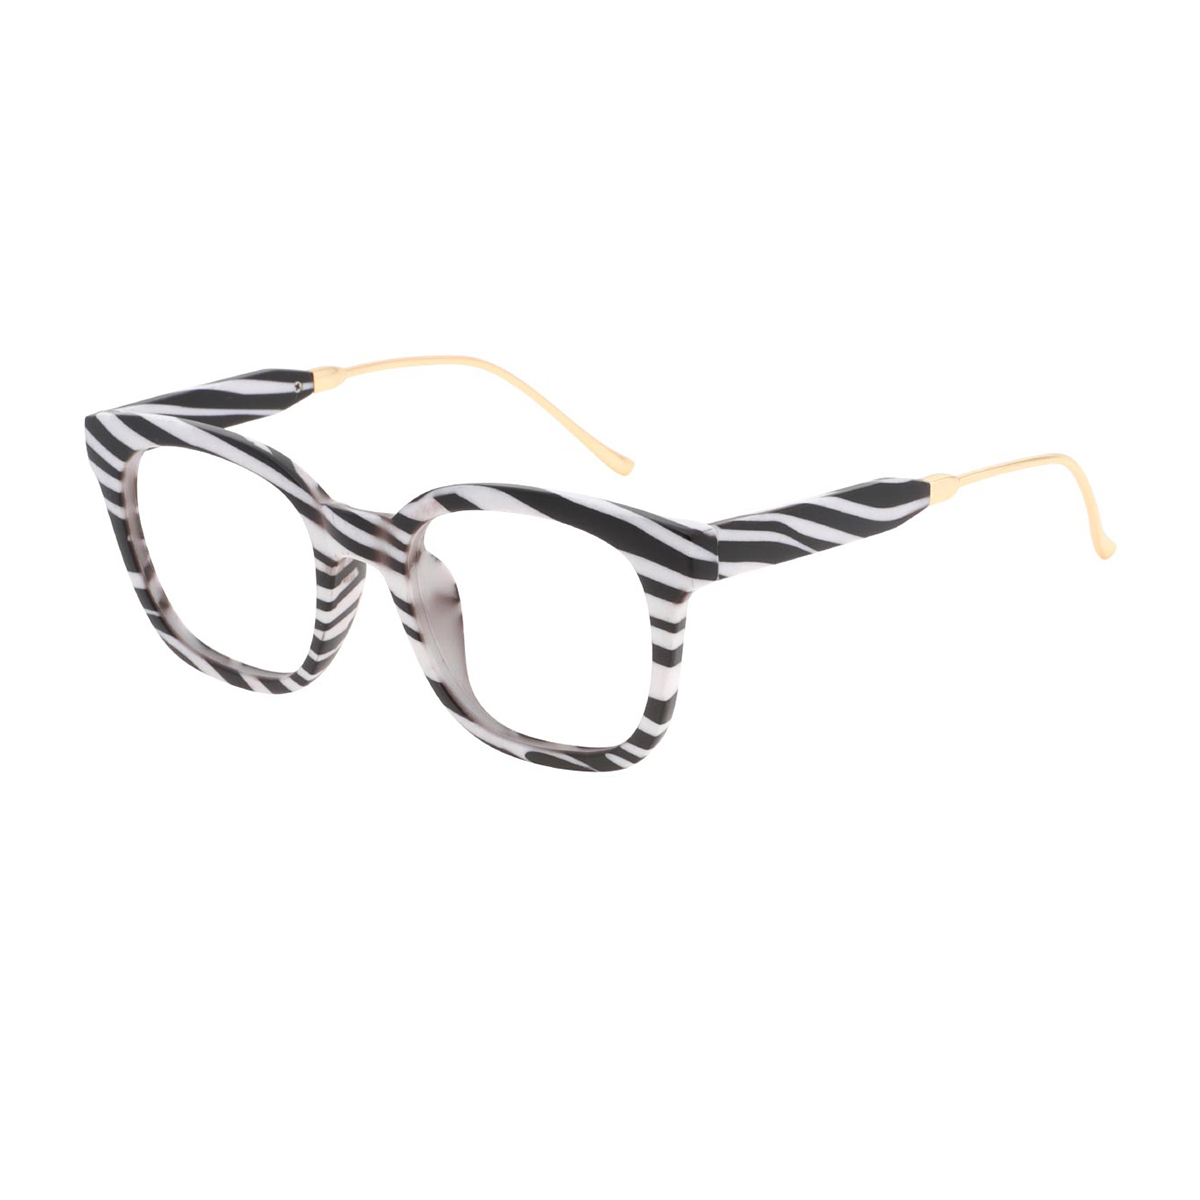 Amasis - Square Zebra-Stripe Reading Glasses for Men & Women